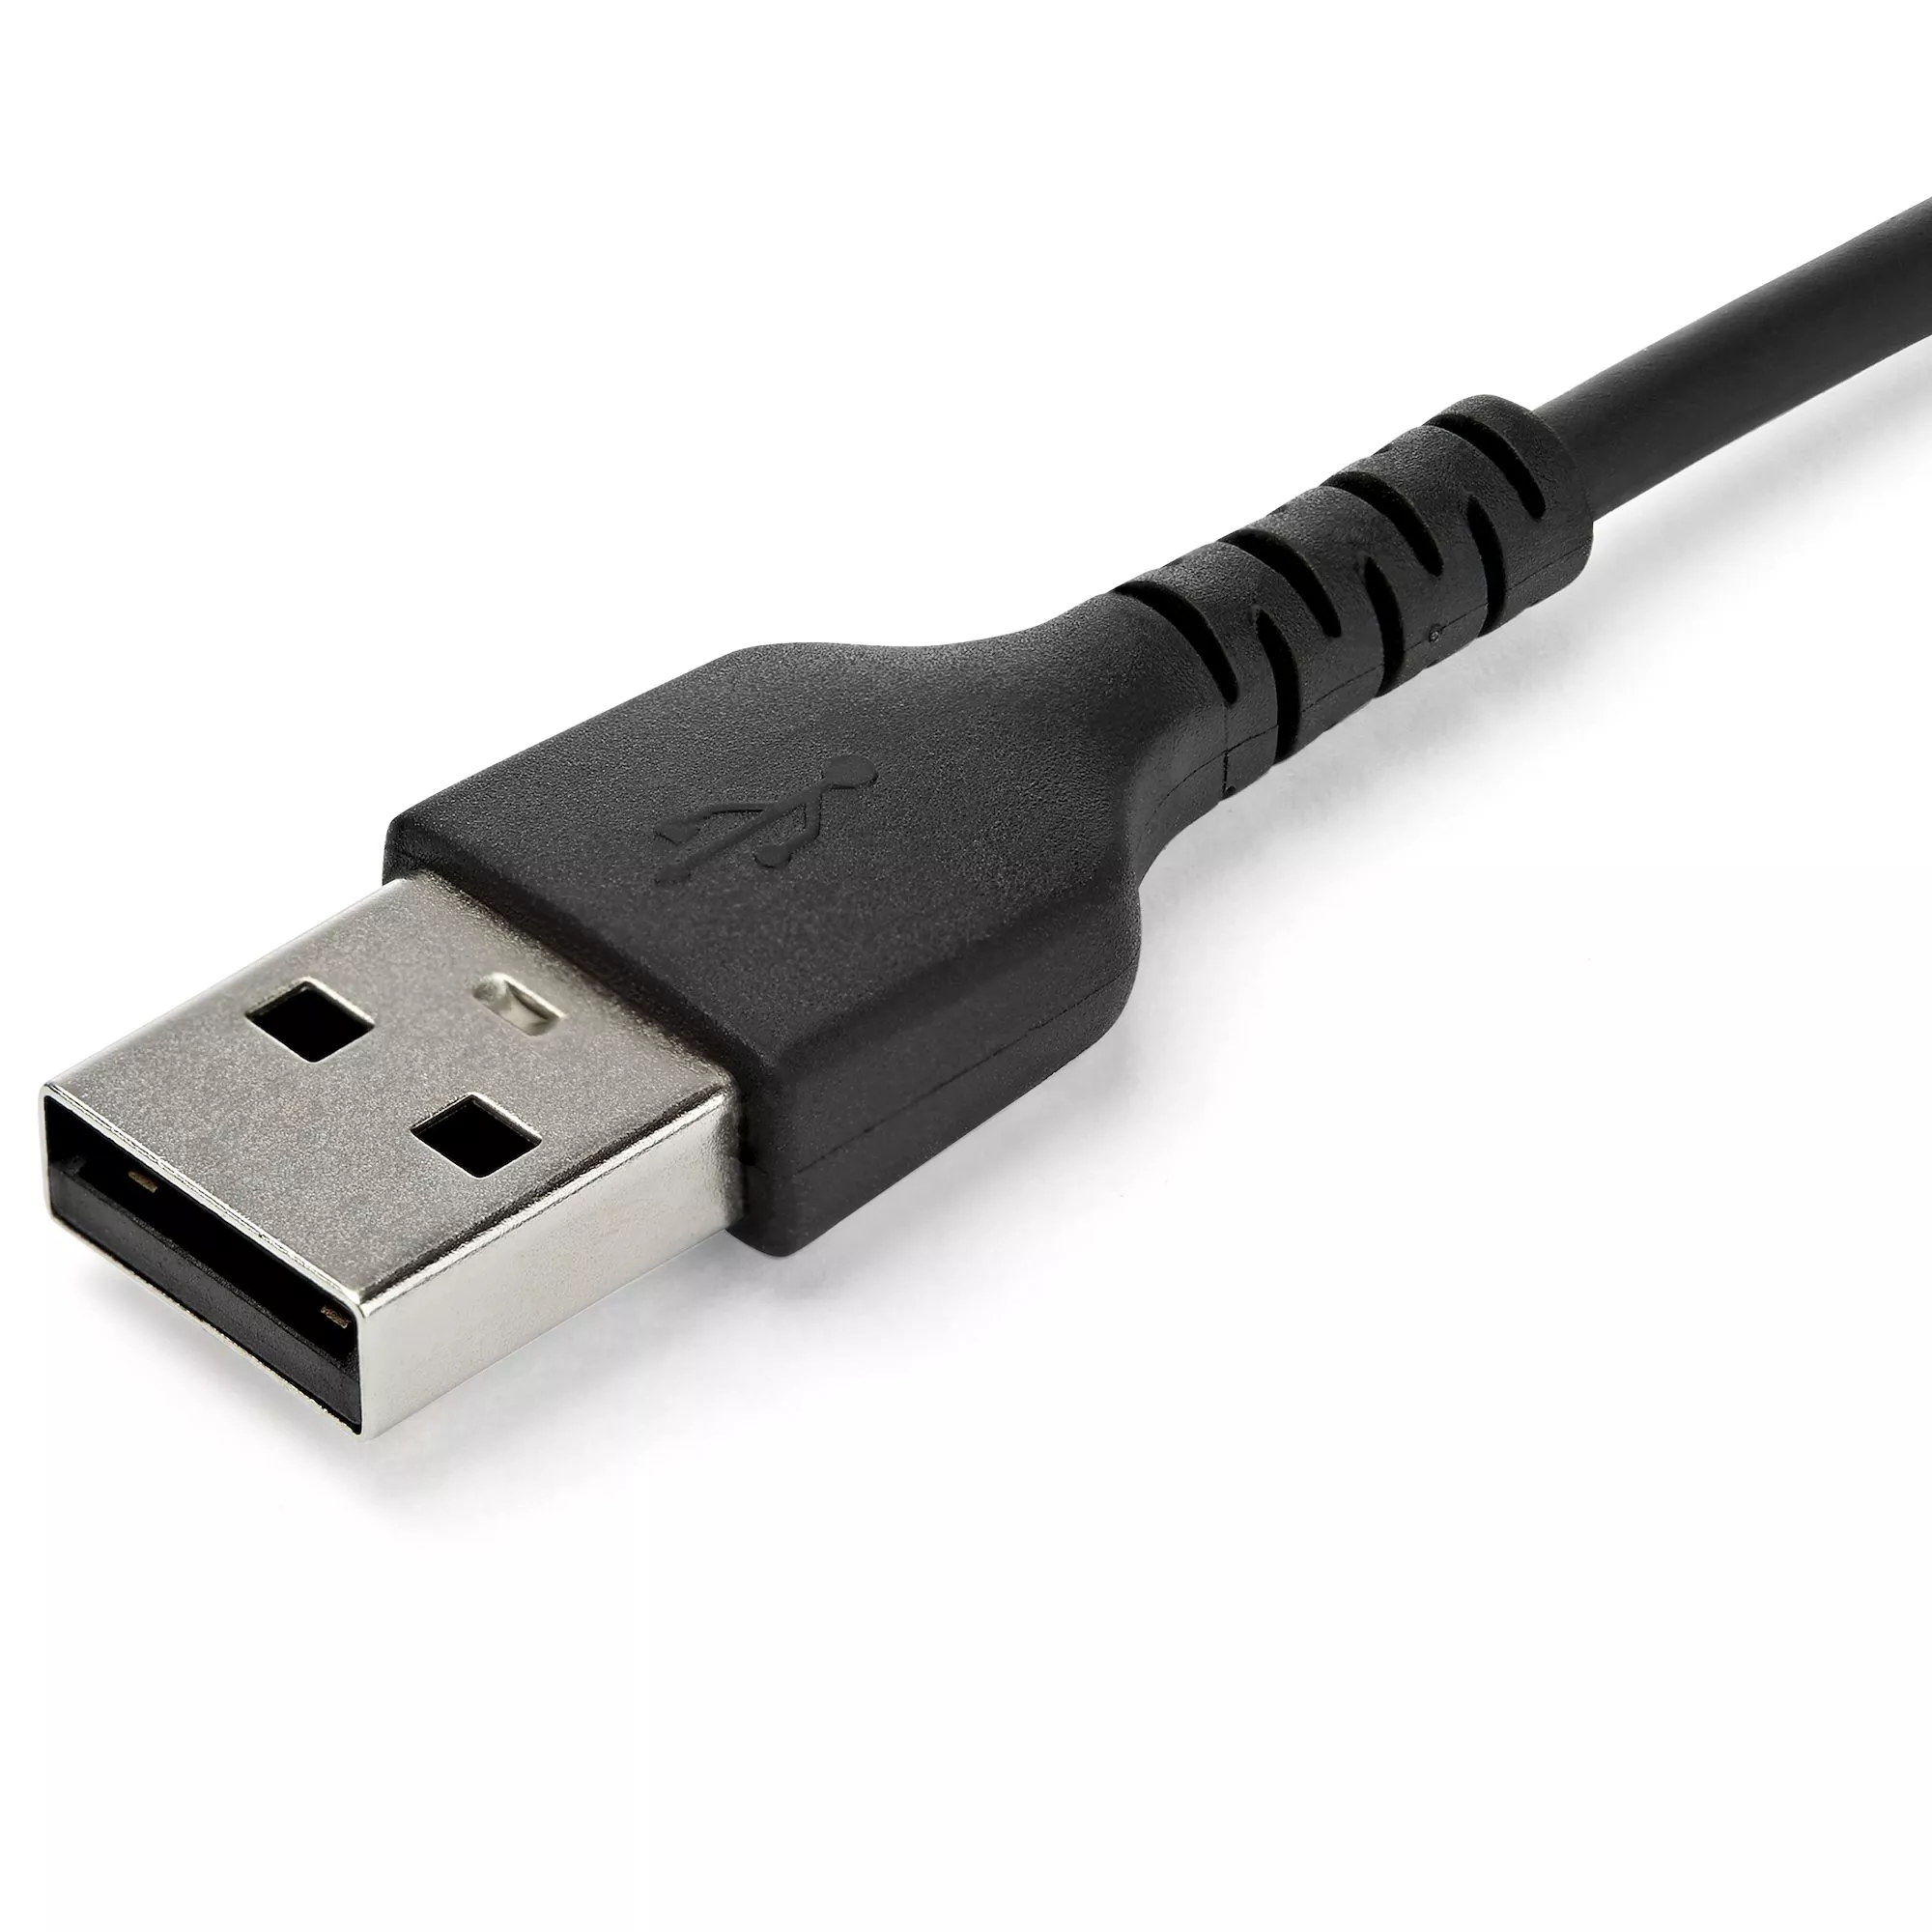 Achat StarTech.com Câble USB-C vers USB 2.0 de 1 sur hello RSE - visuel 3